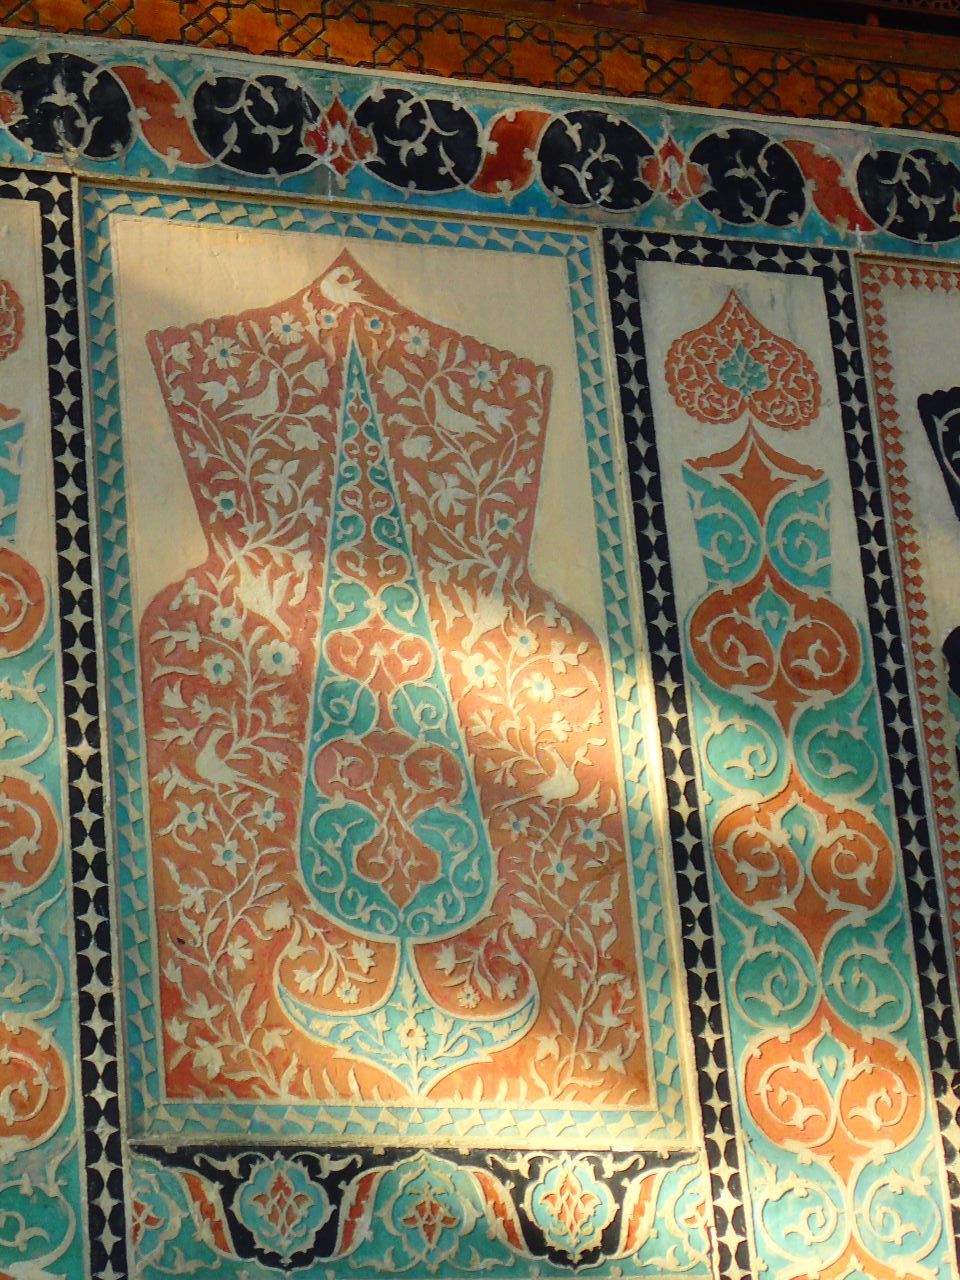 Сладкая сказка востока. Шекинский дворец, албанская церковь Шеки, Азербайджан